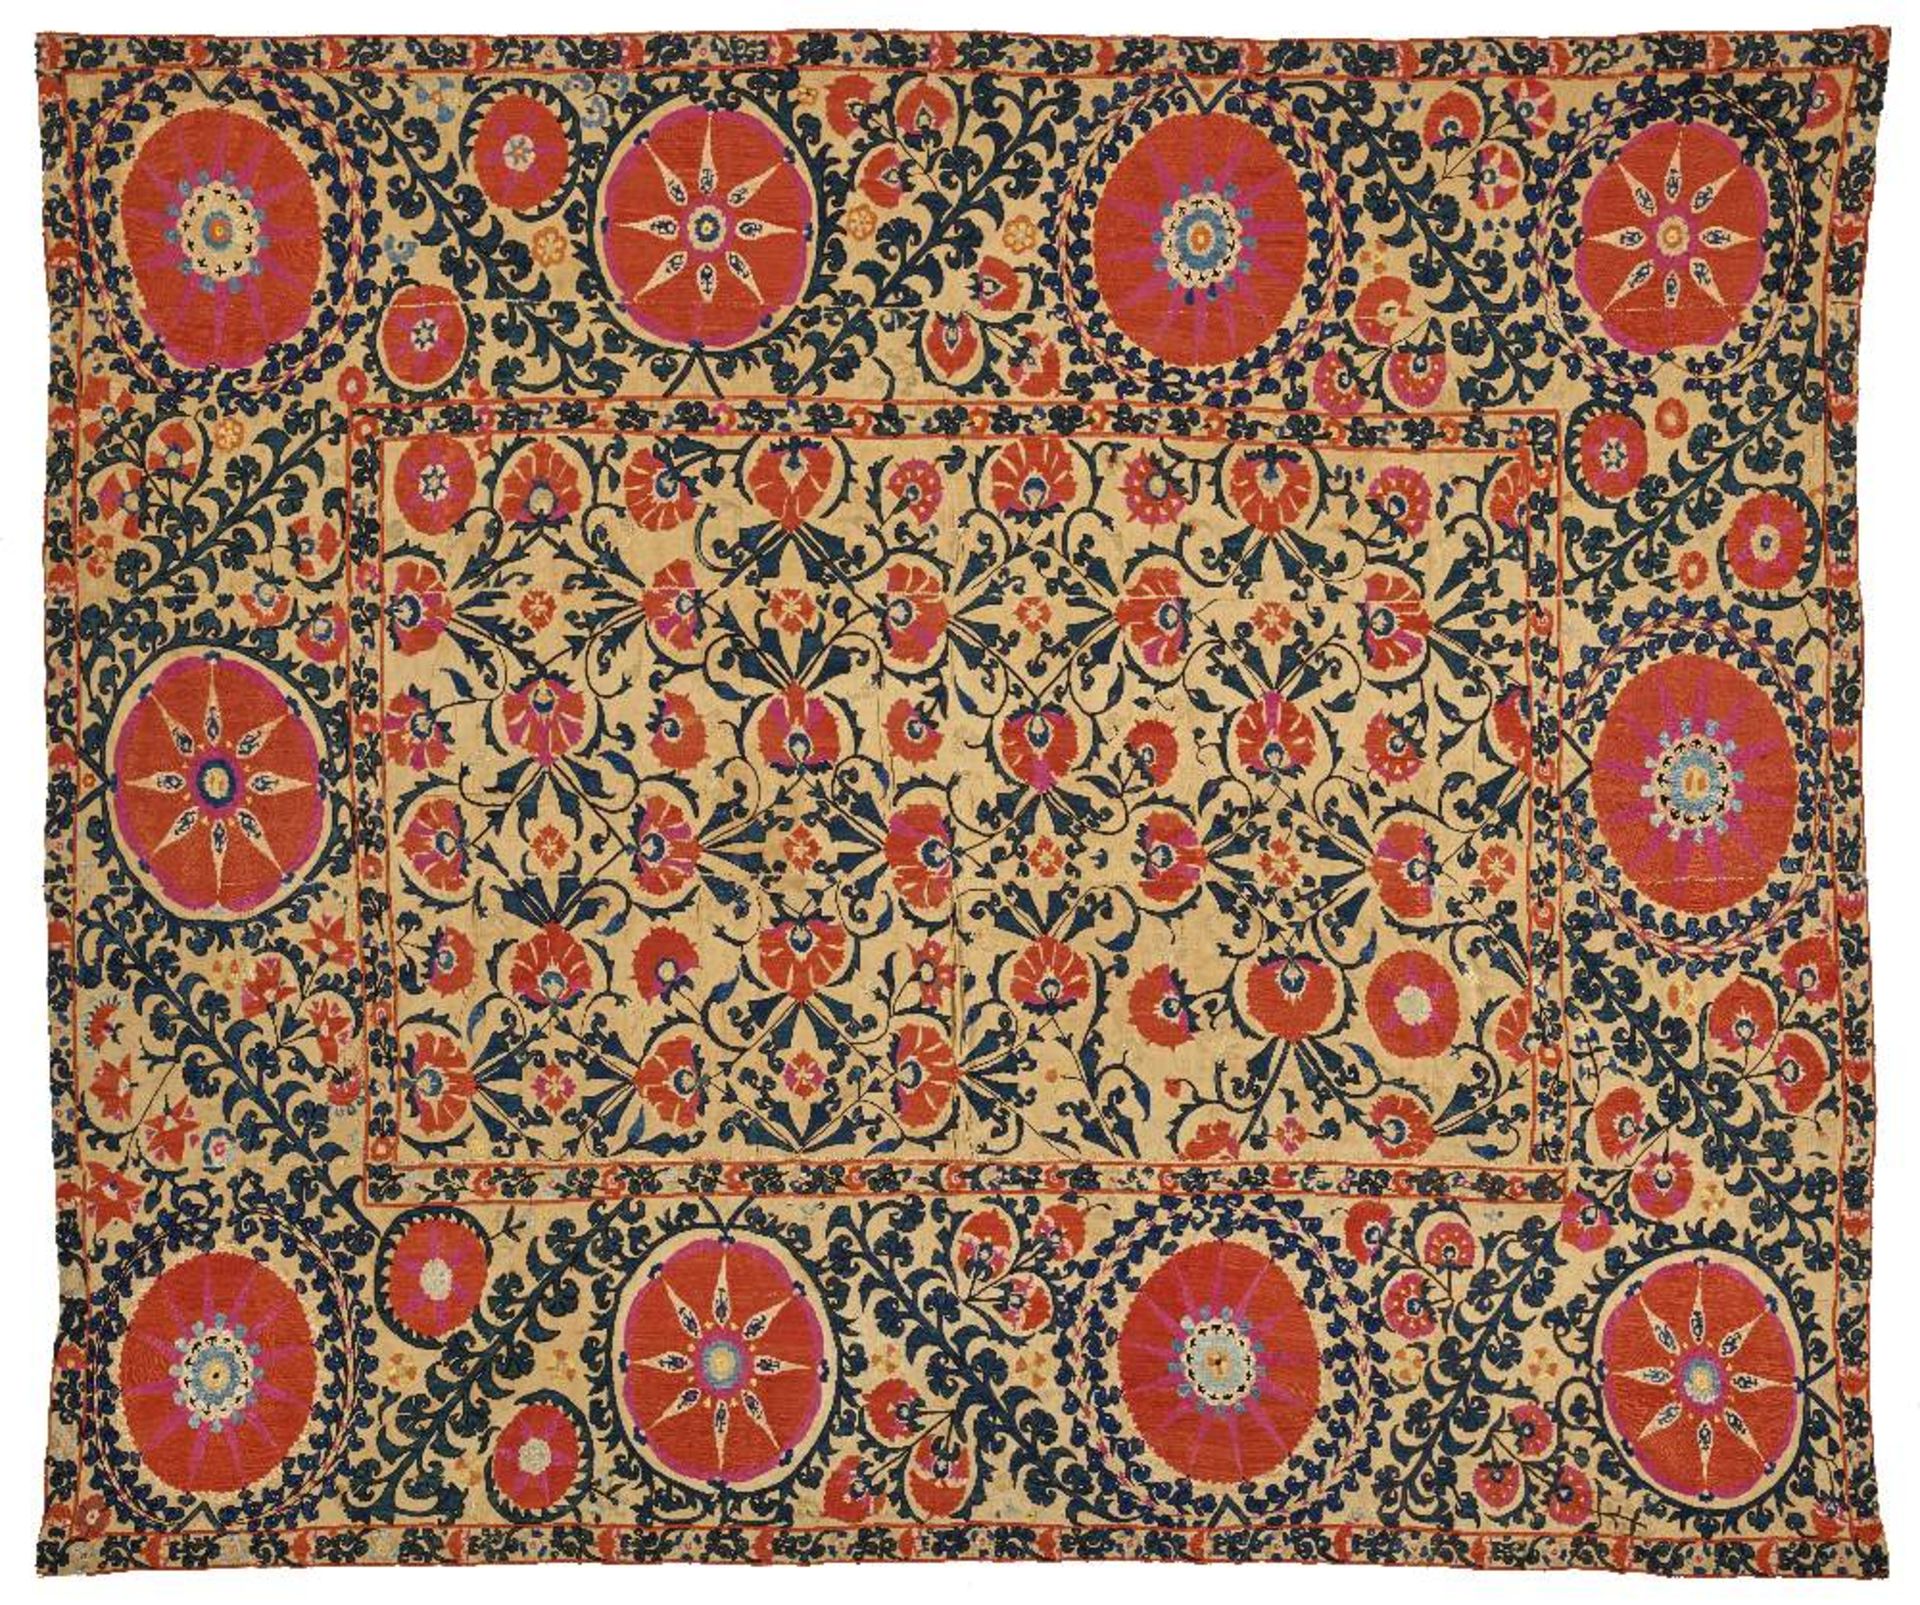 Splendide suzaniOuzbékistan, XIXe siècleTenture en coton brodé de fils de soie polychrome composée